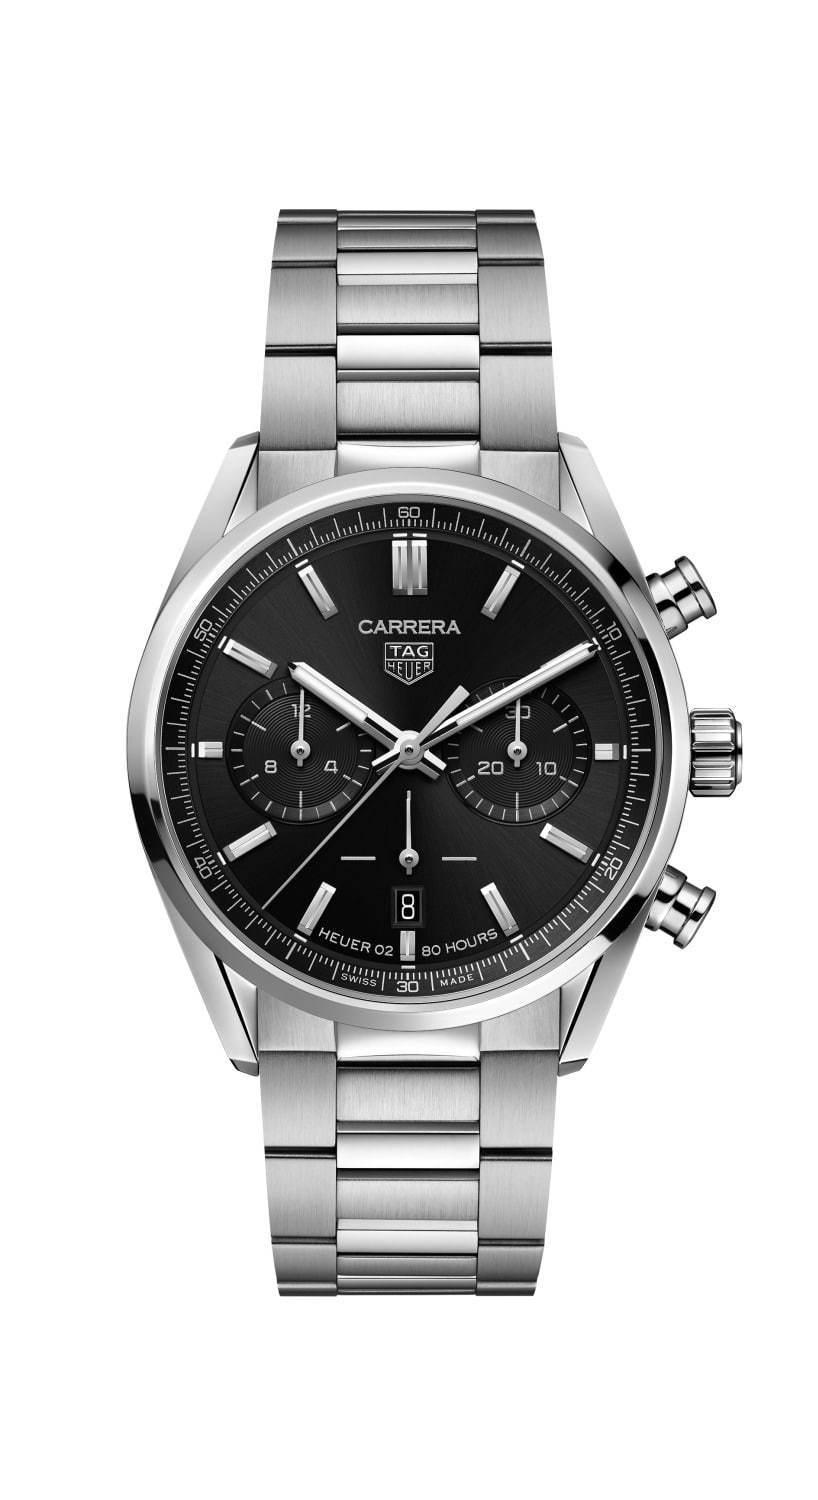 タグ・ホイヤーの腕時計「カレラ」ブラックやブルーダイヤルの新作4型、初代モデルのディテール踏襲 コピー